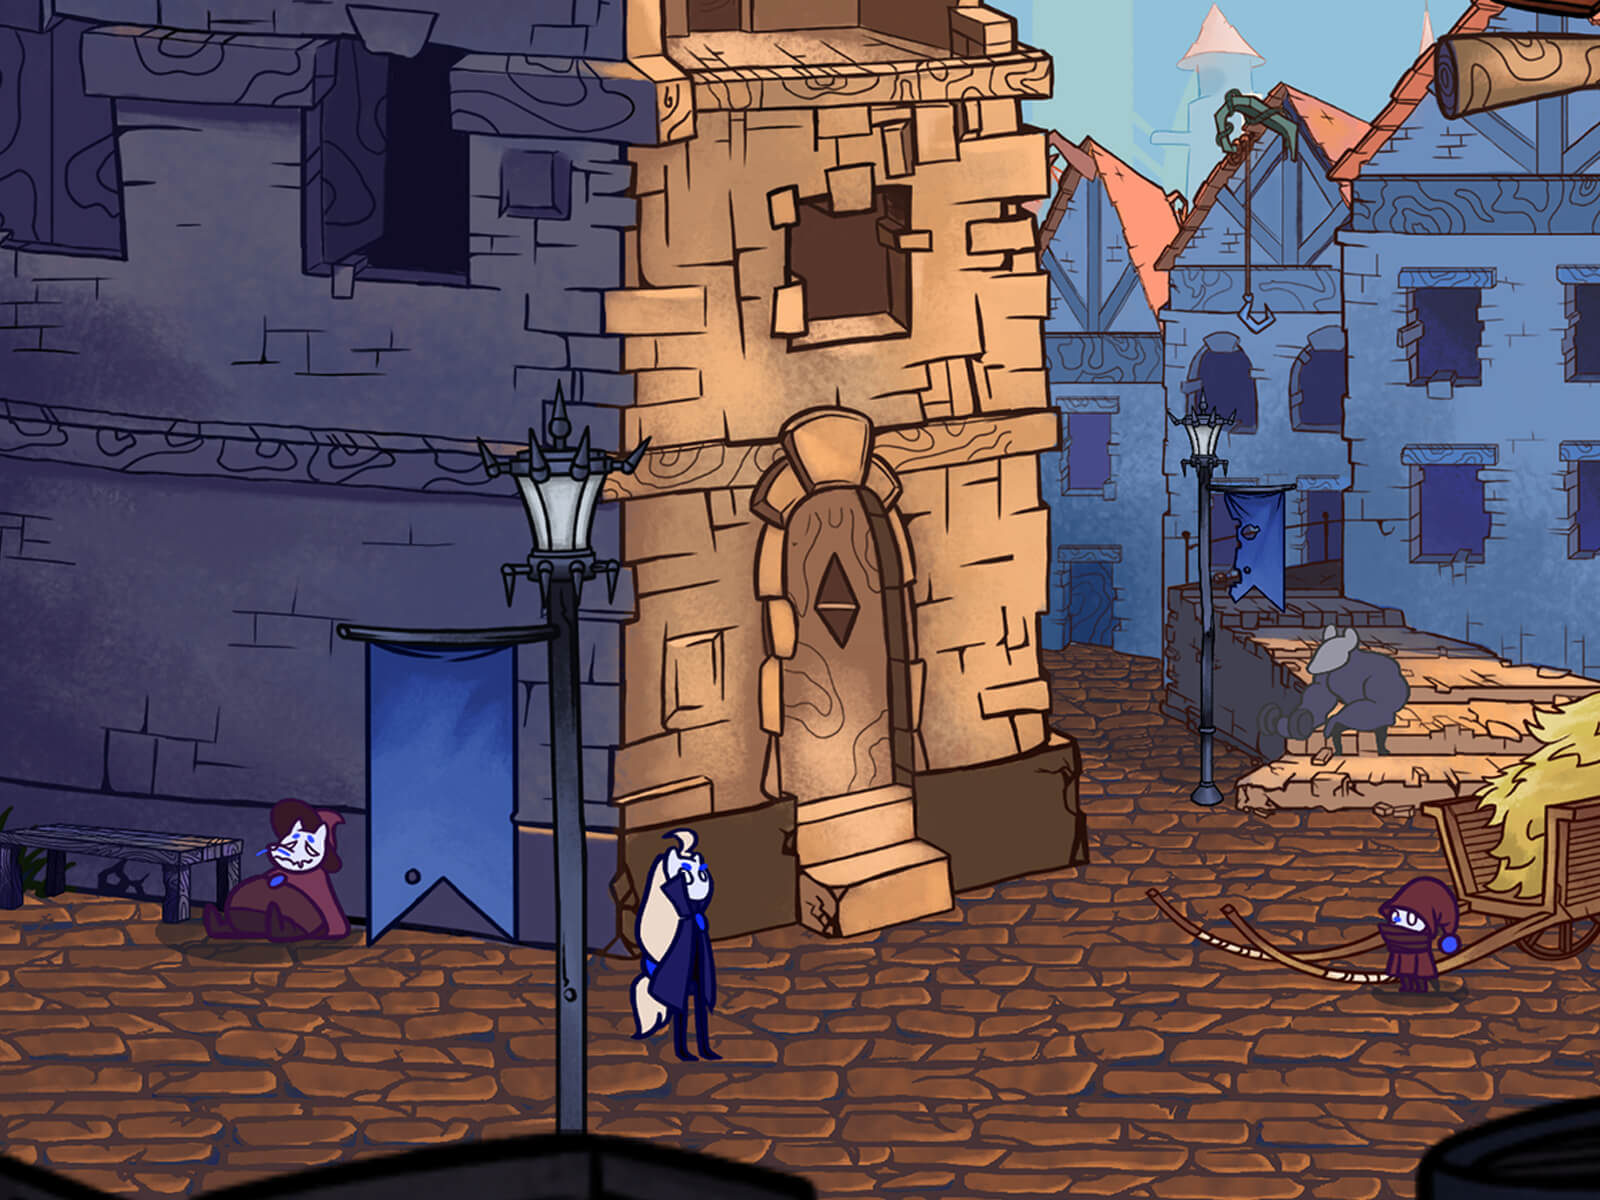 Imagen del premiado juego Jera en la que se ve una escena de ciudad con varios personajes.